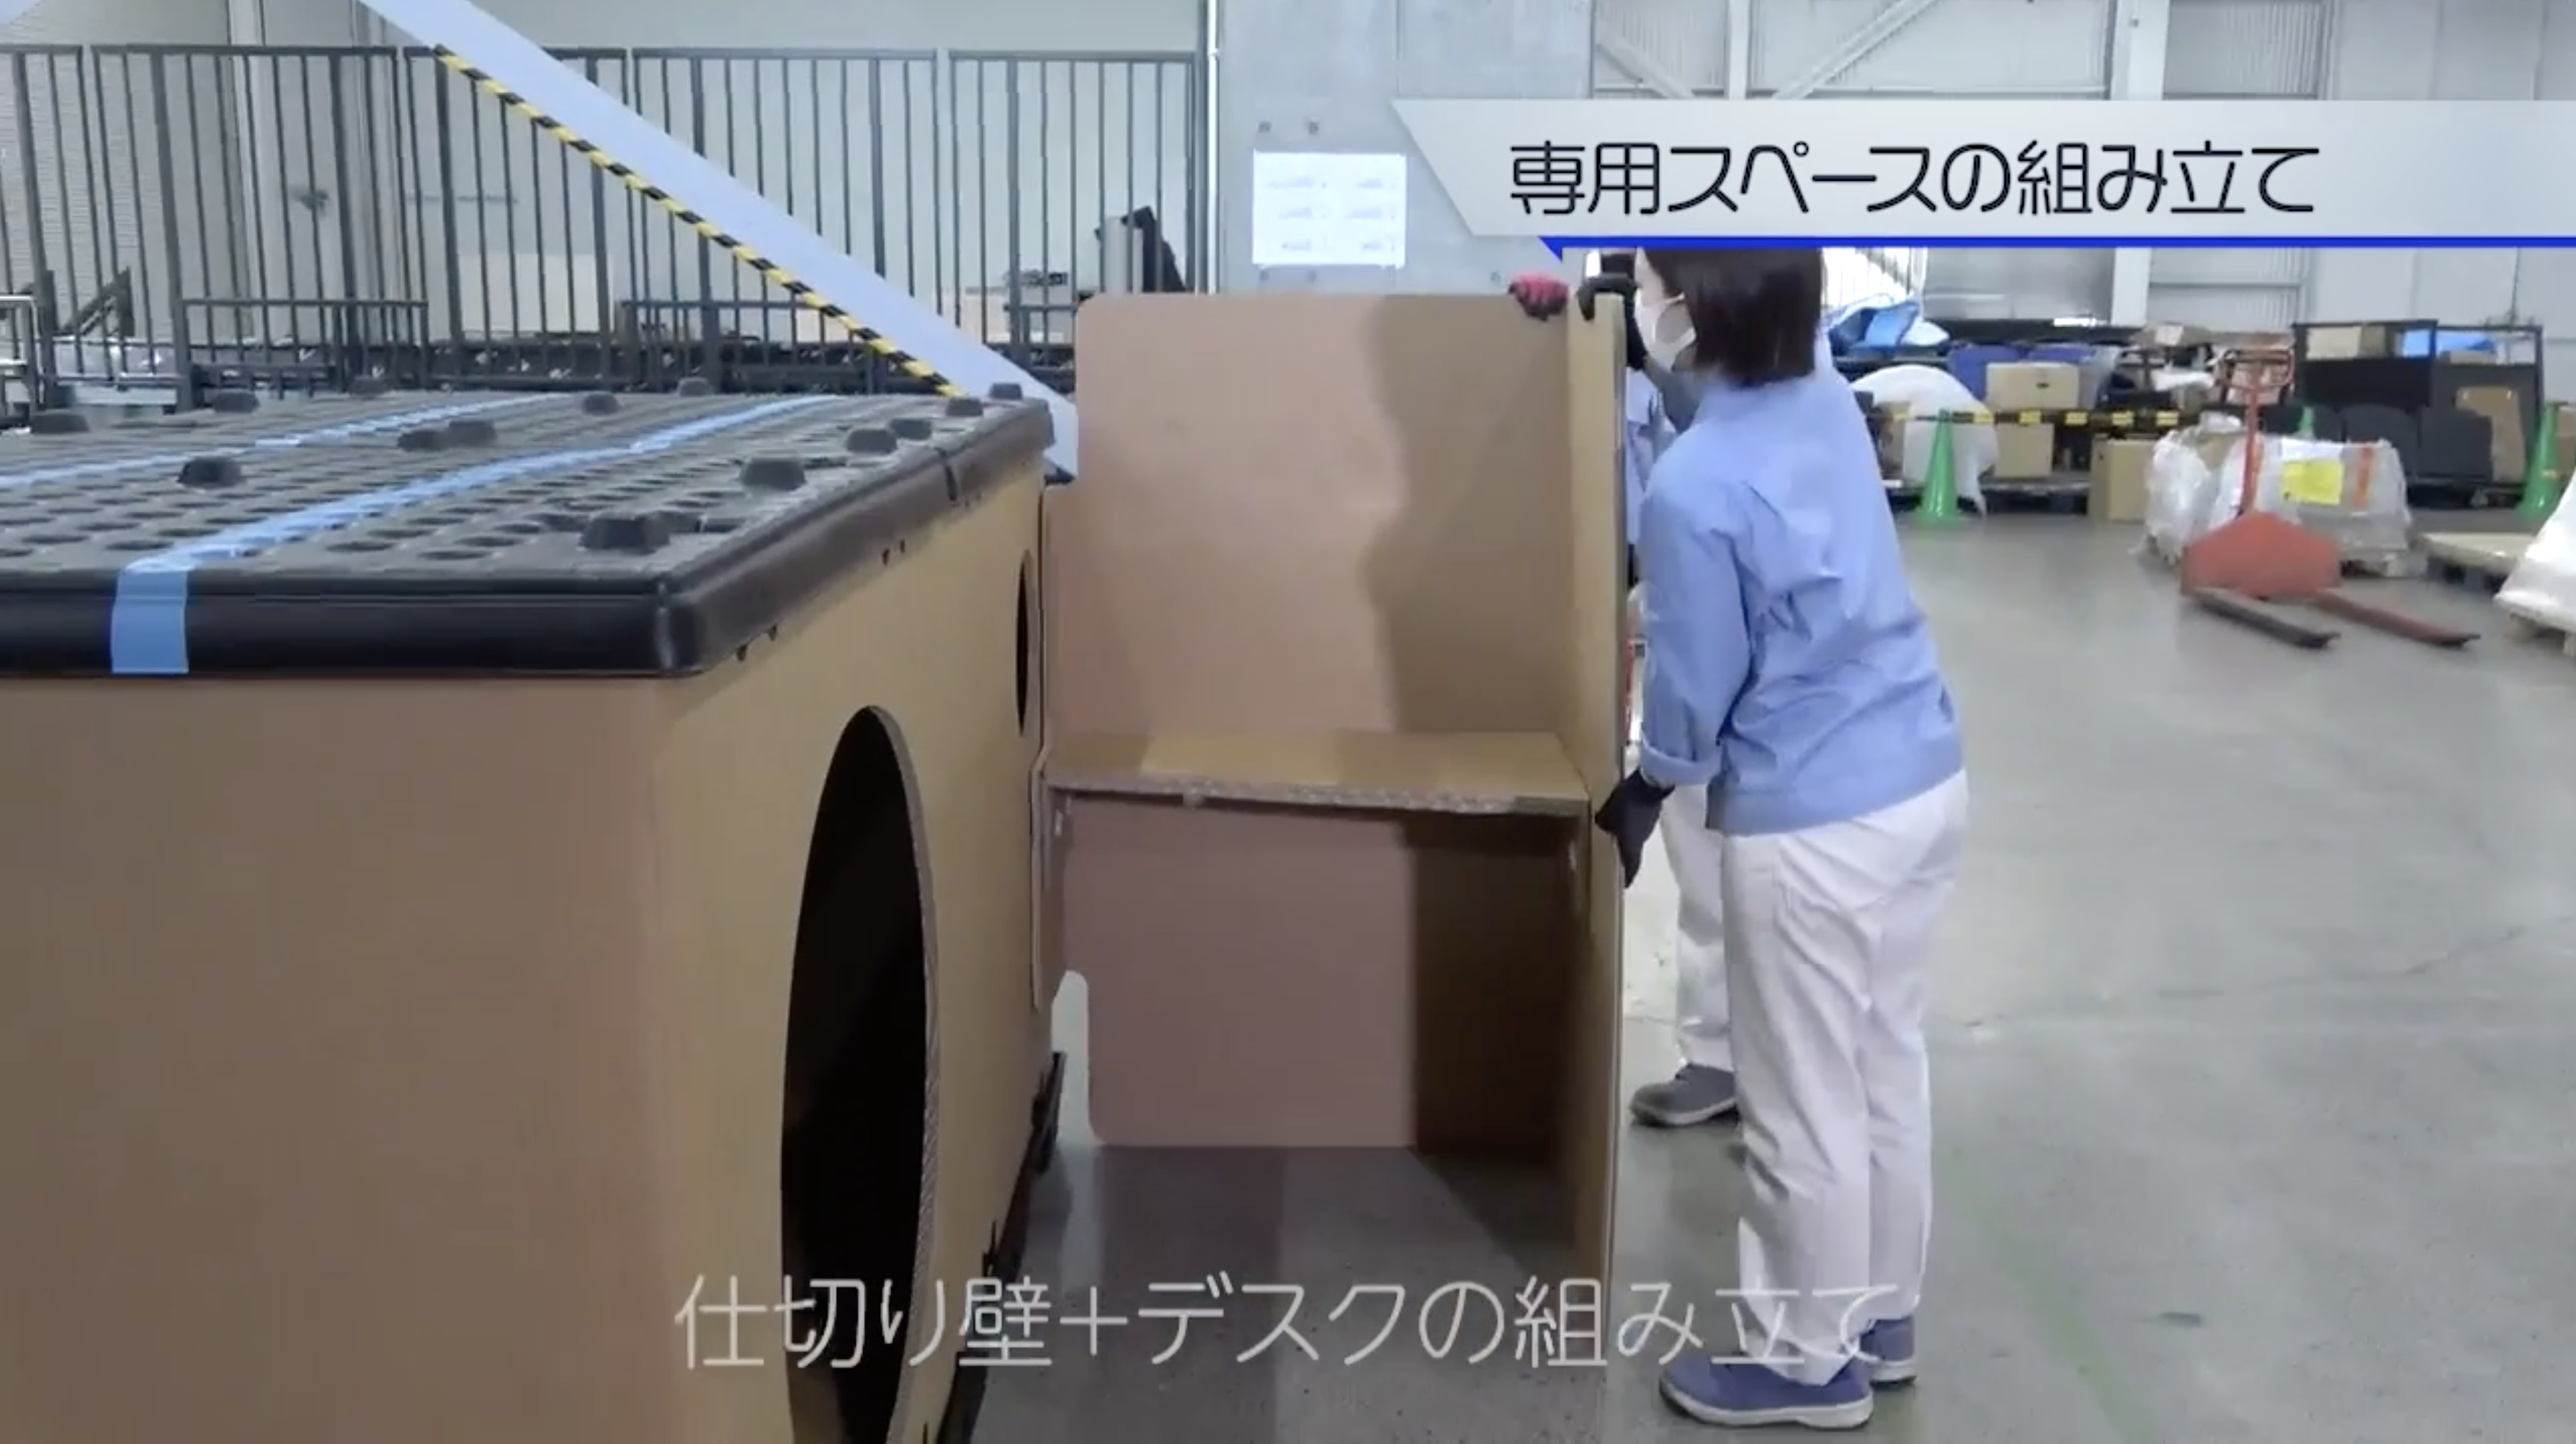 Sleep Capsules de cartón Kotobuki - Nueva solución para los desastres naturales